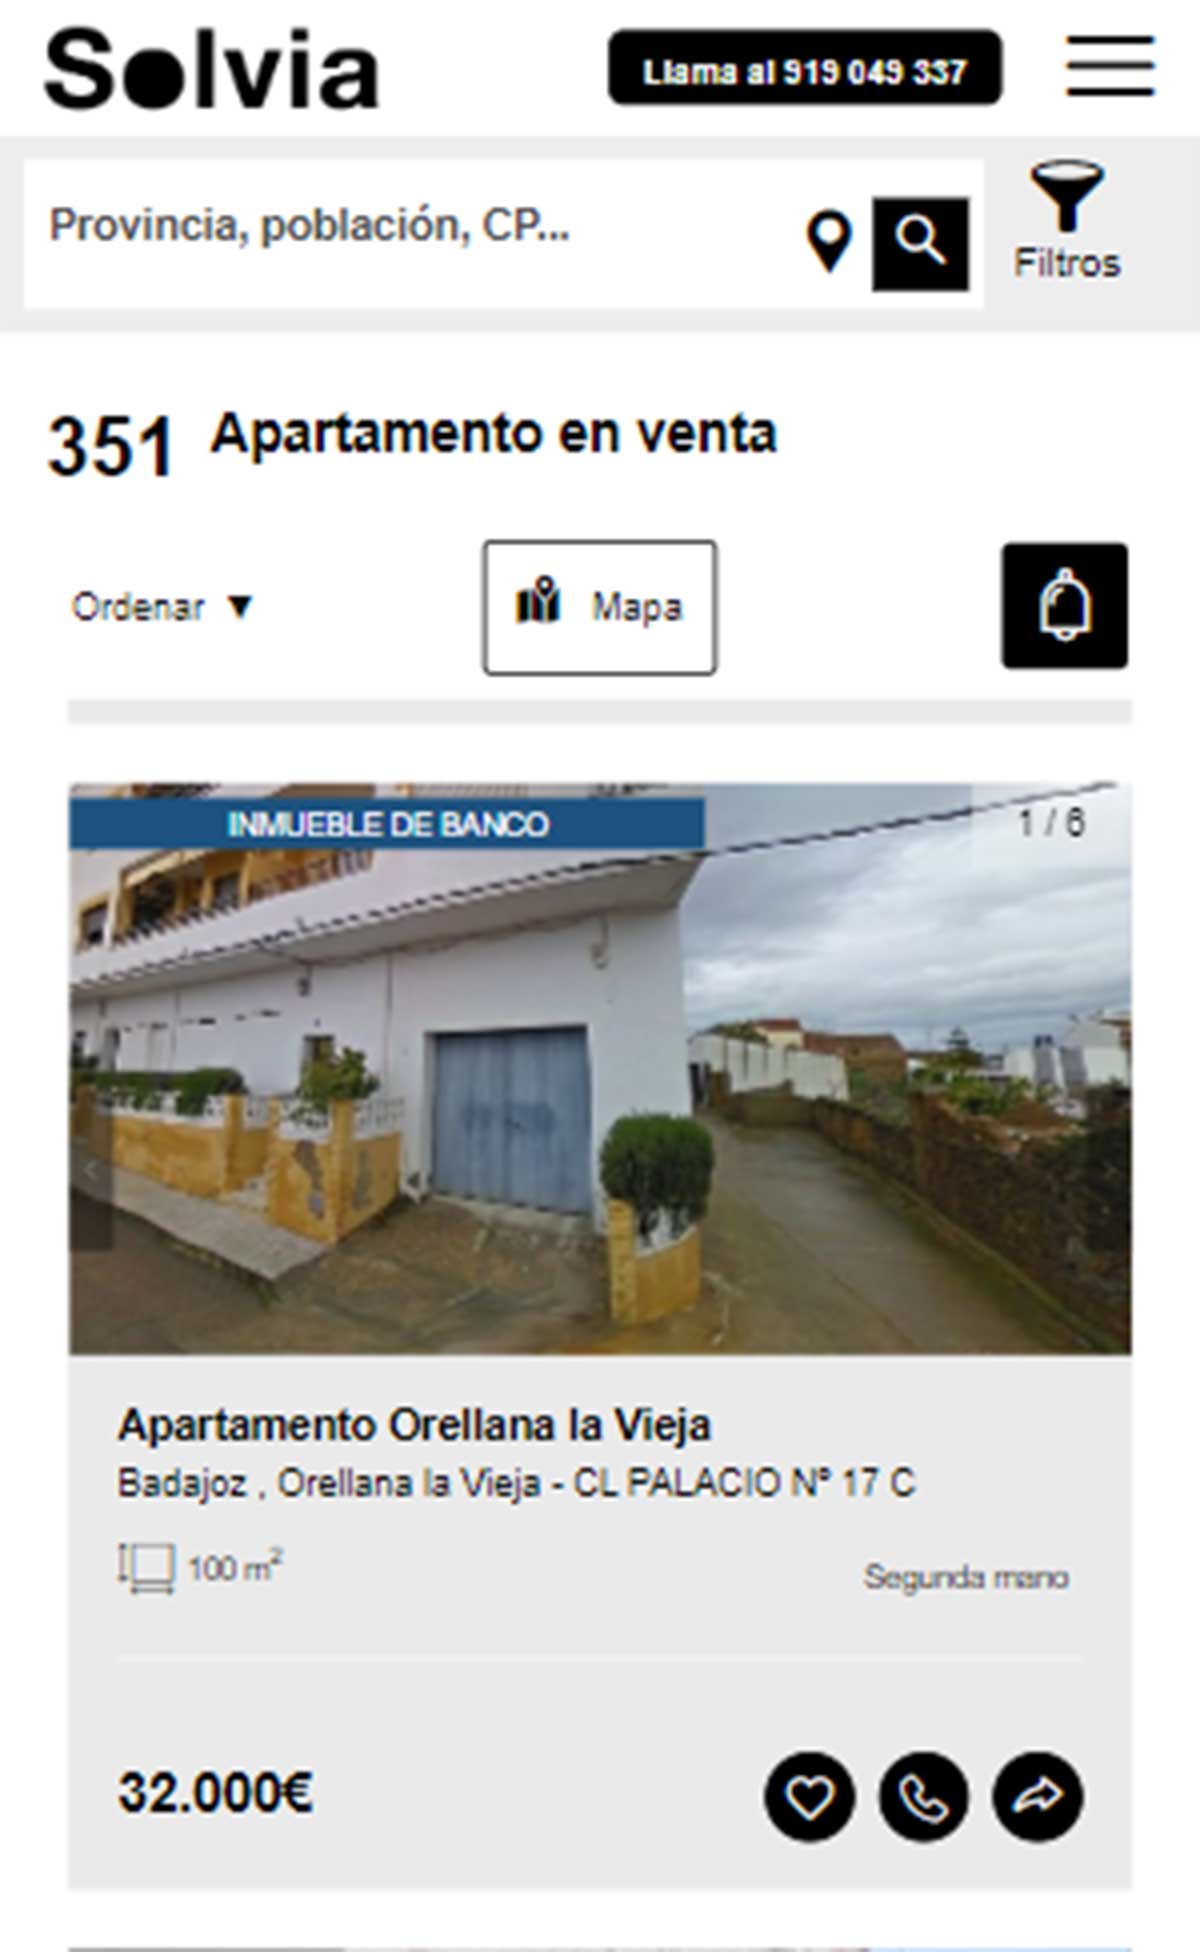 Apartamento a la venta por 32.000 euros